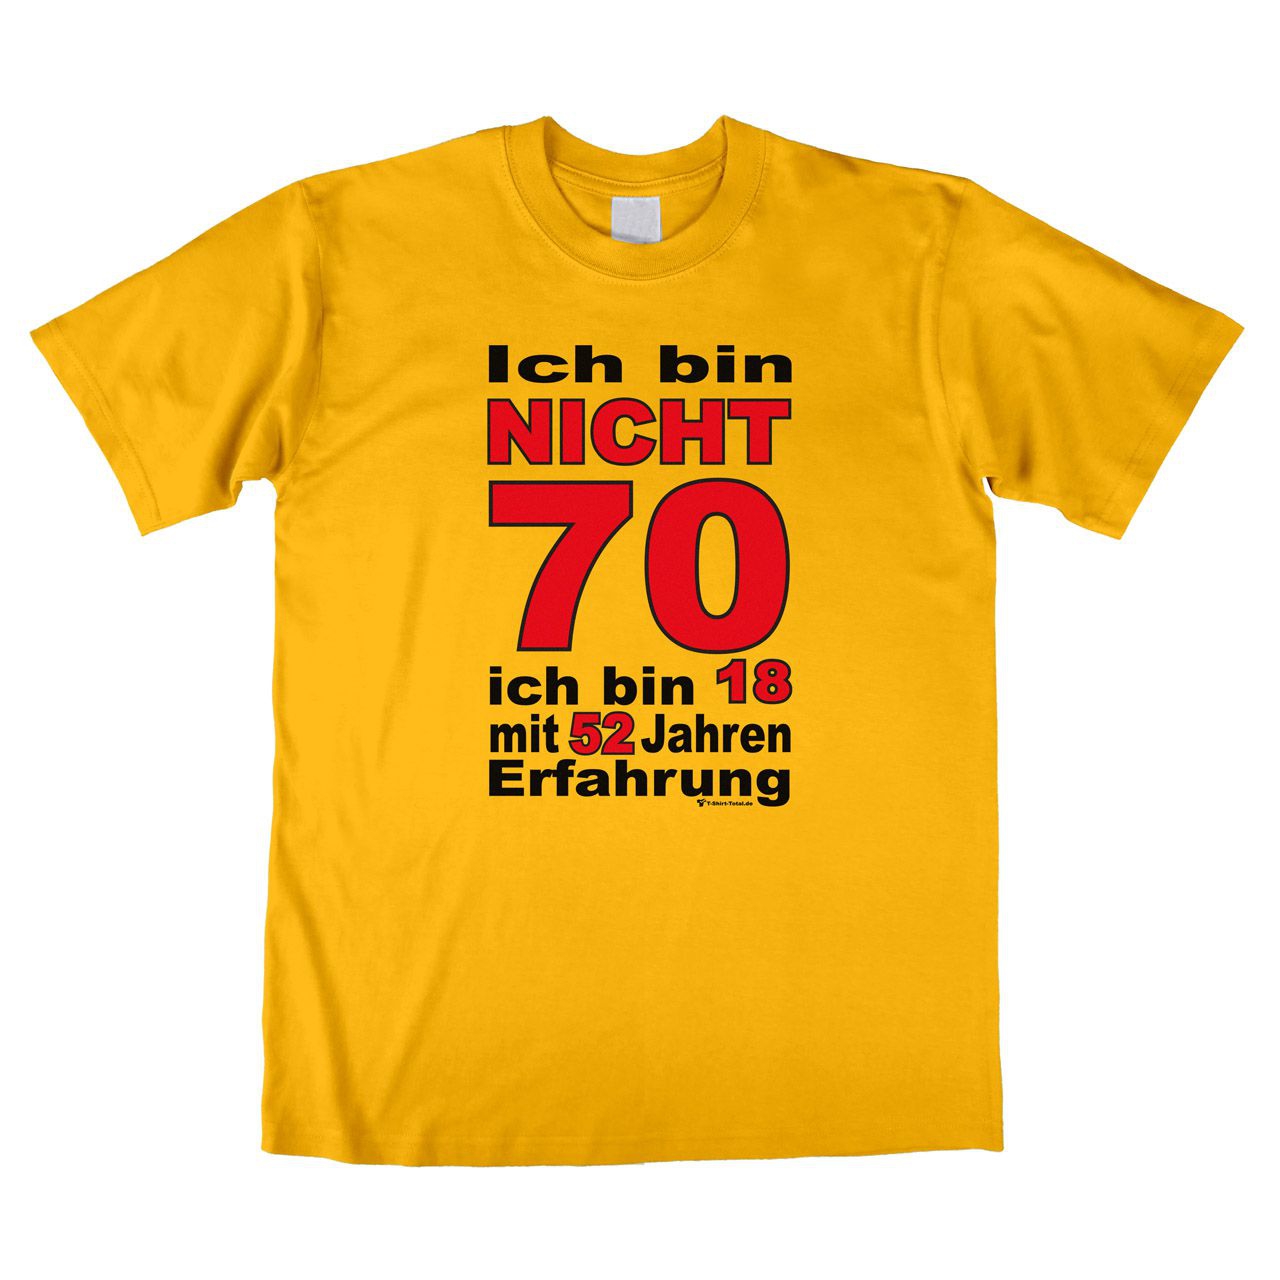 Bin nicht 70 Unisex T-Shirt gelb Large